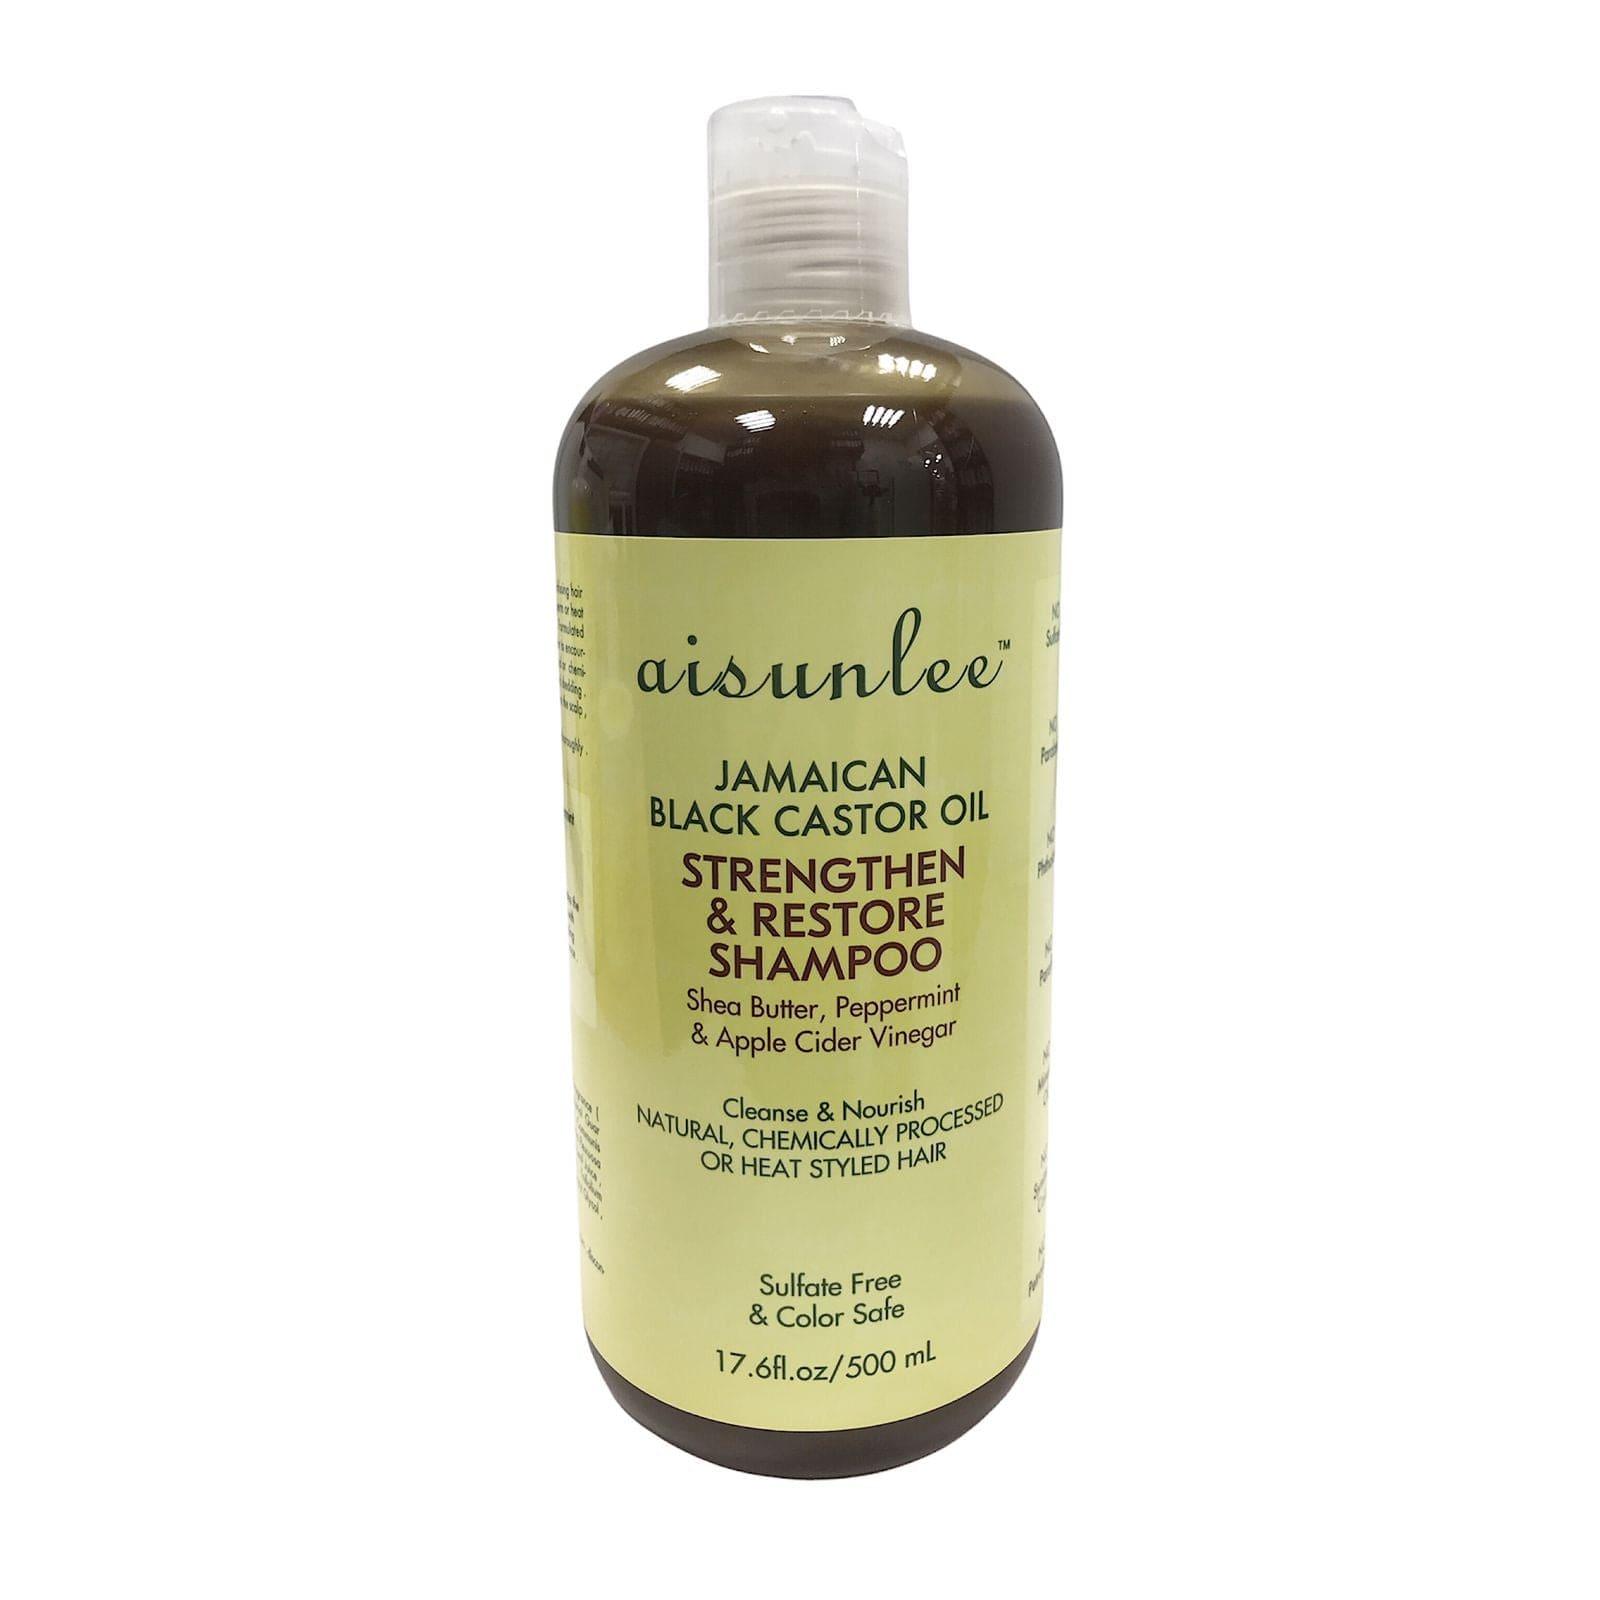 Aisunlee Jamaican Black Castor Oil Shampoo 500ml